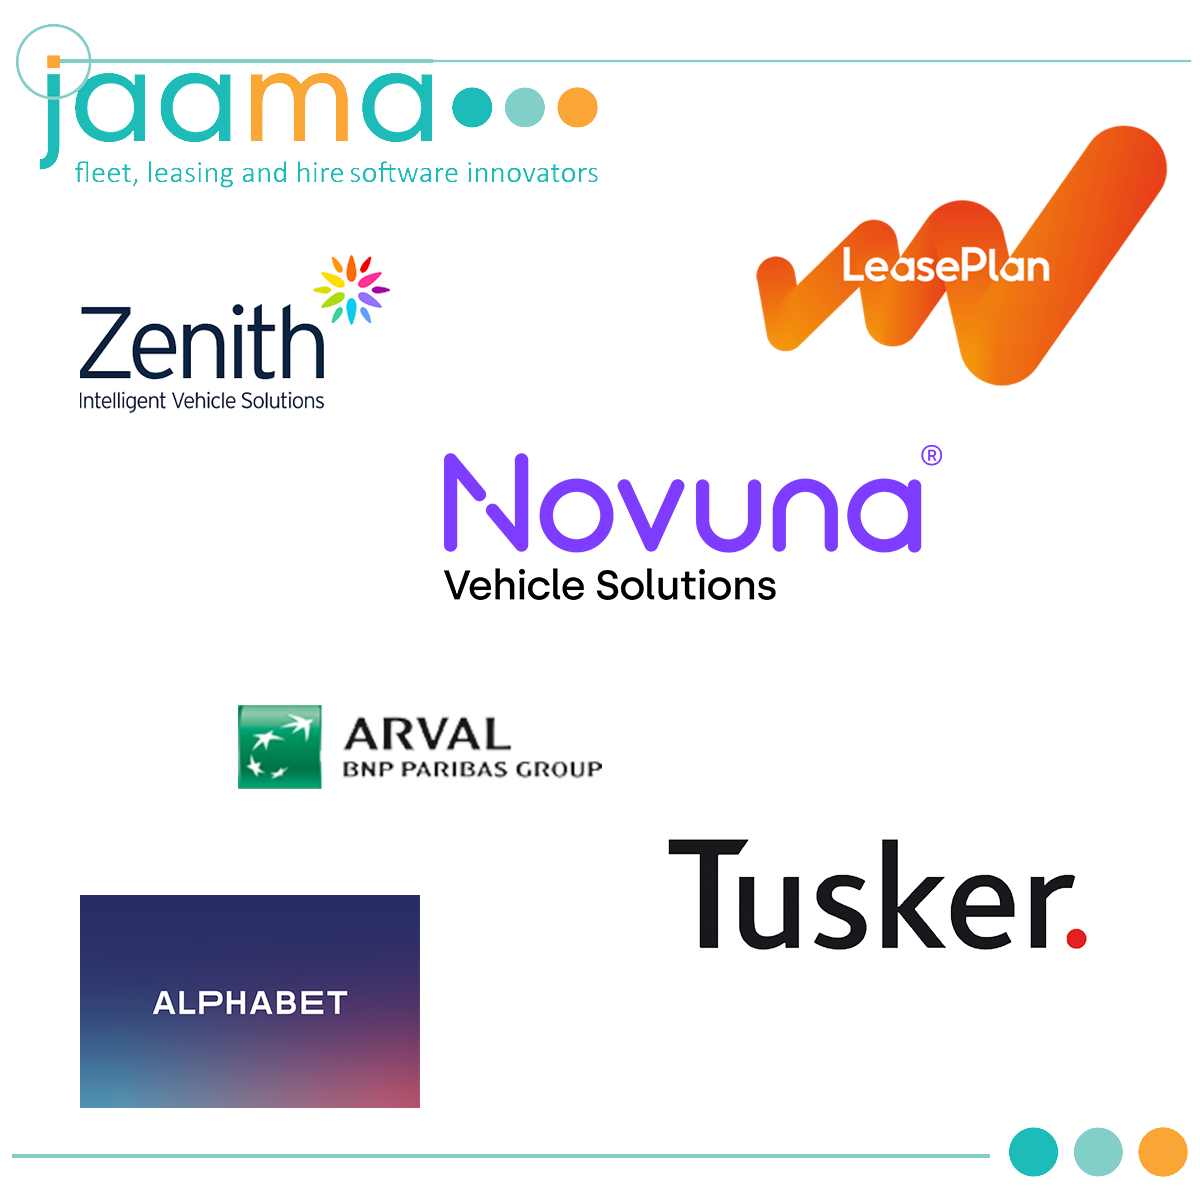 Jaama Customer Logos on Jaama Background